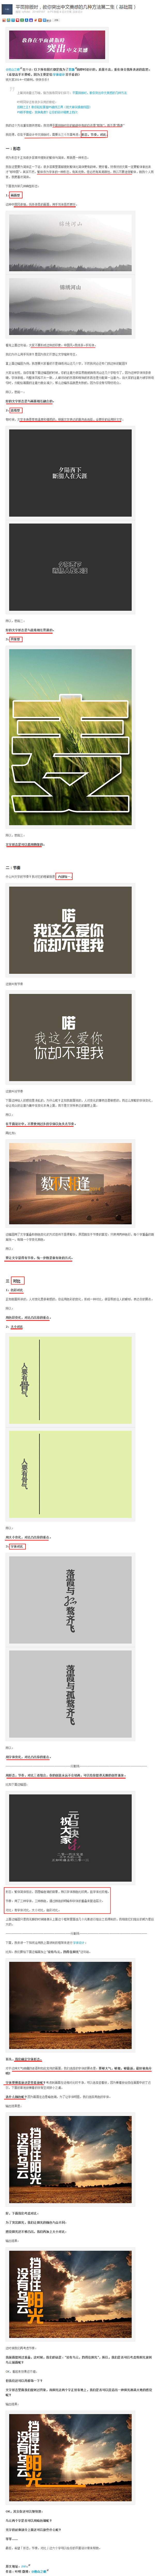 平面排版时，教你突出中文美感的几种方法第...